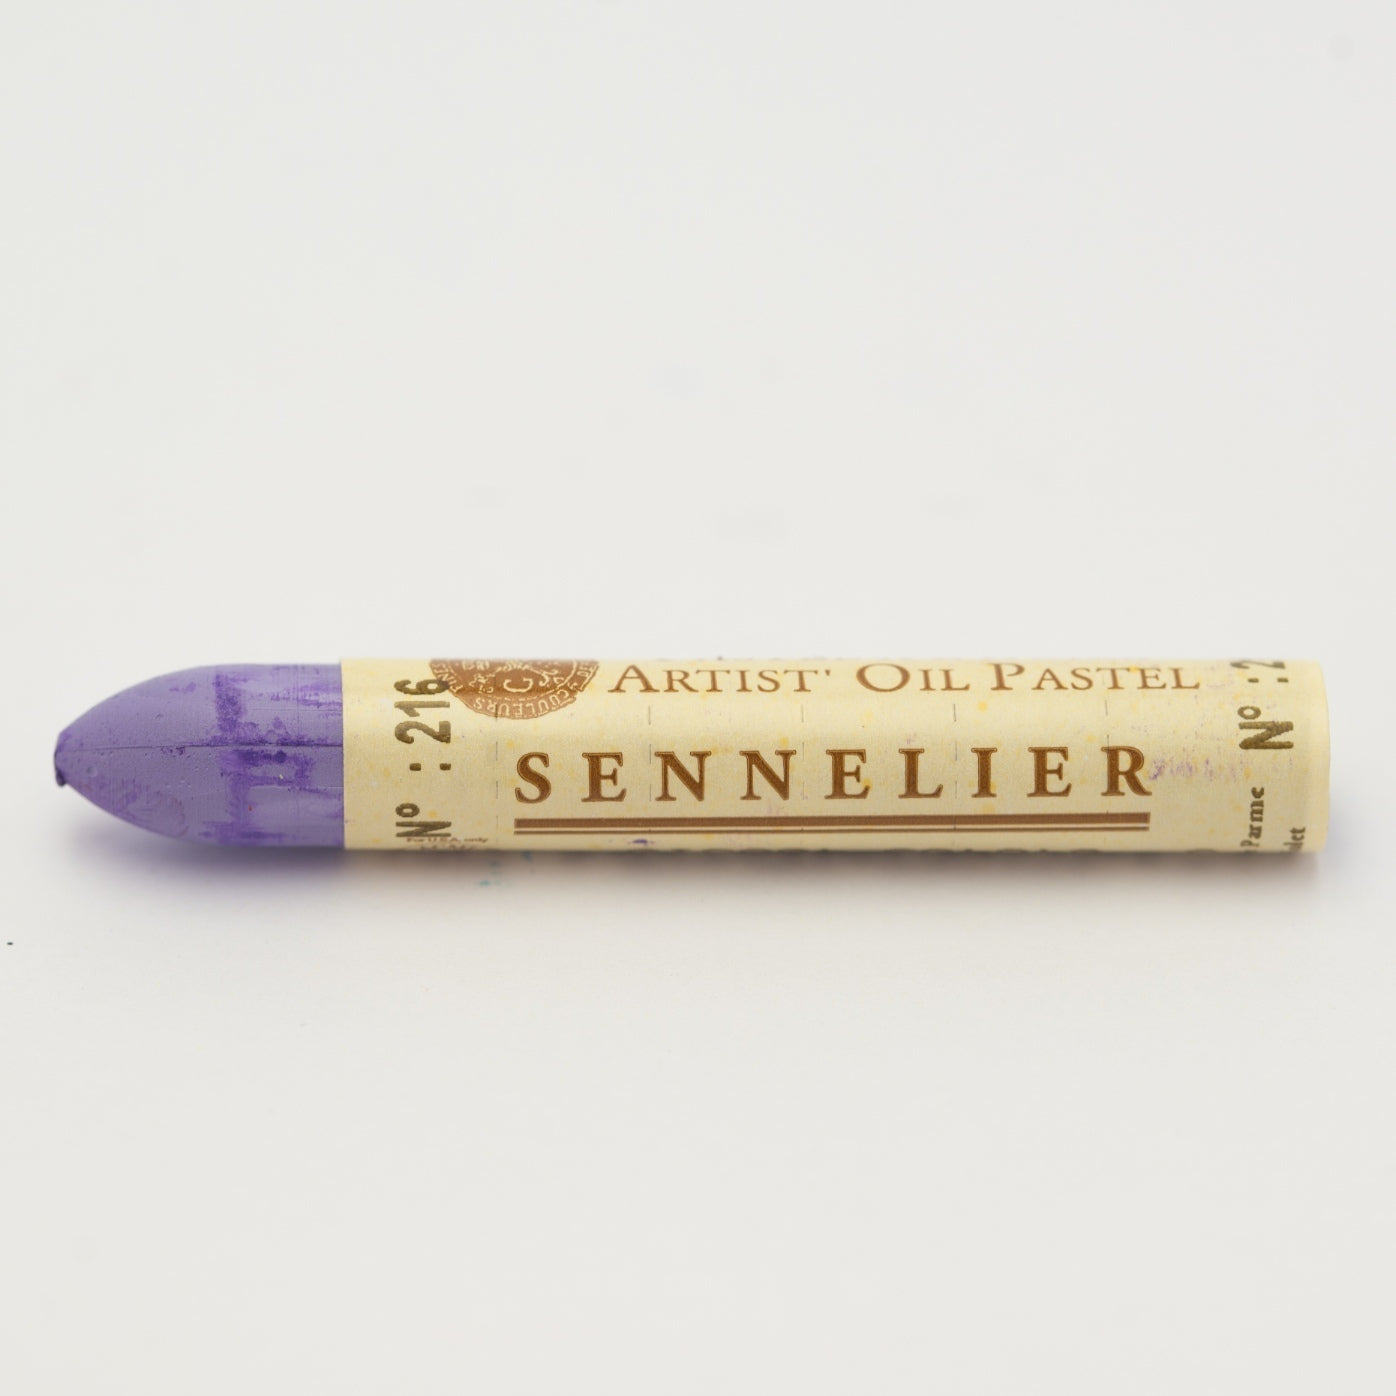 SENNELIER Artist Oil Pastel 216 Parma Violet